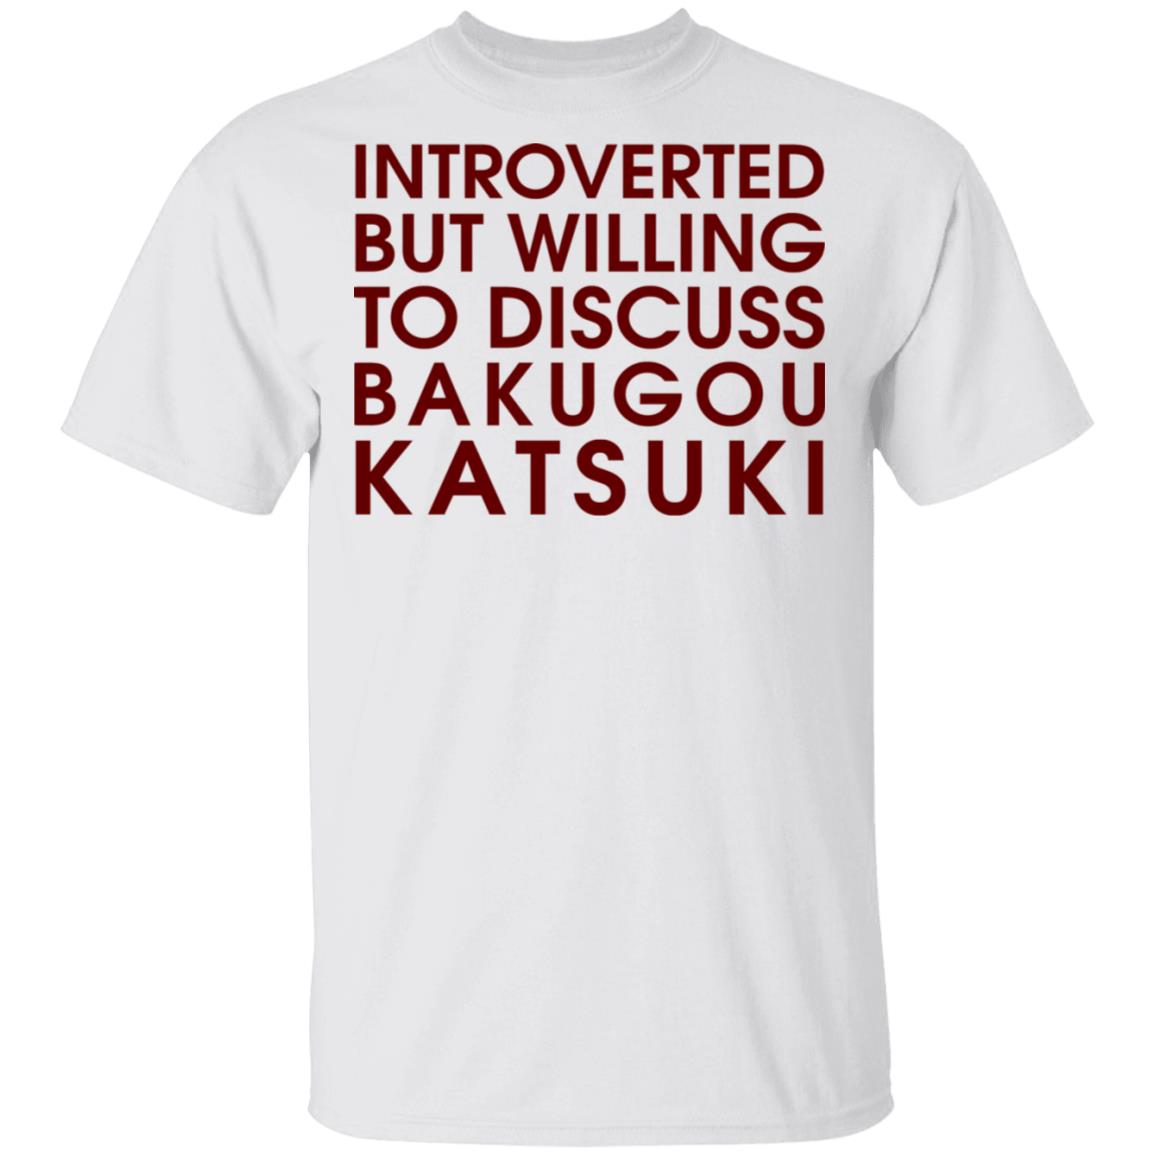 Introverted But Willing To Discuss Bakugou Katsuki Shirt